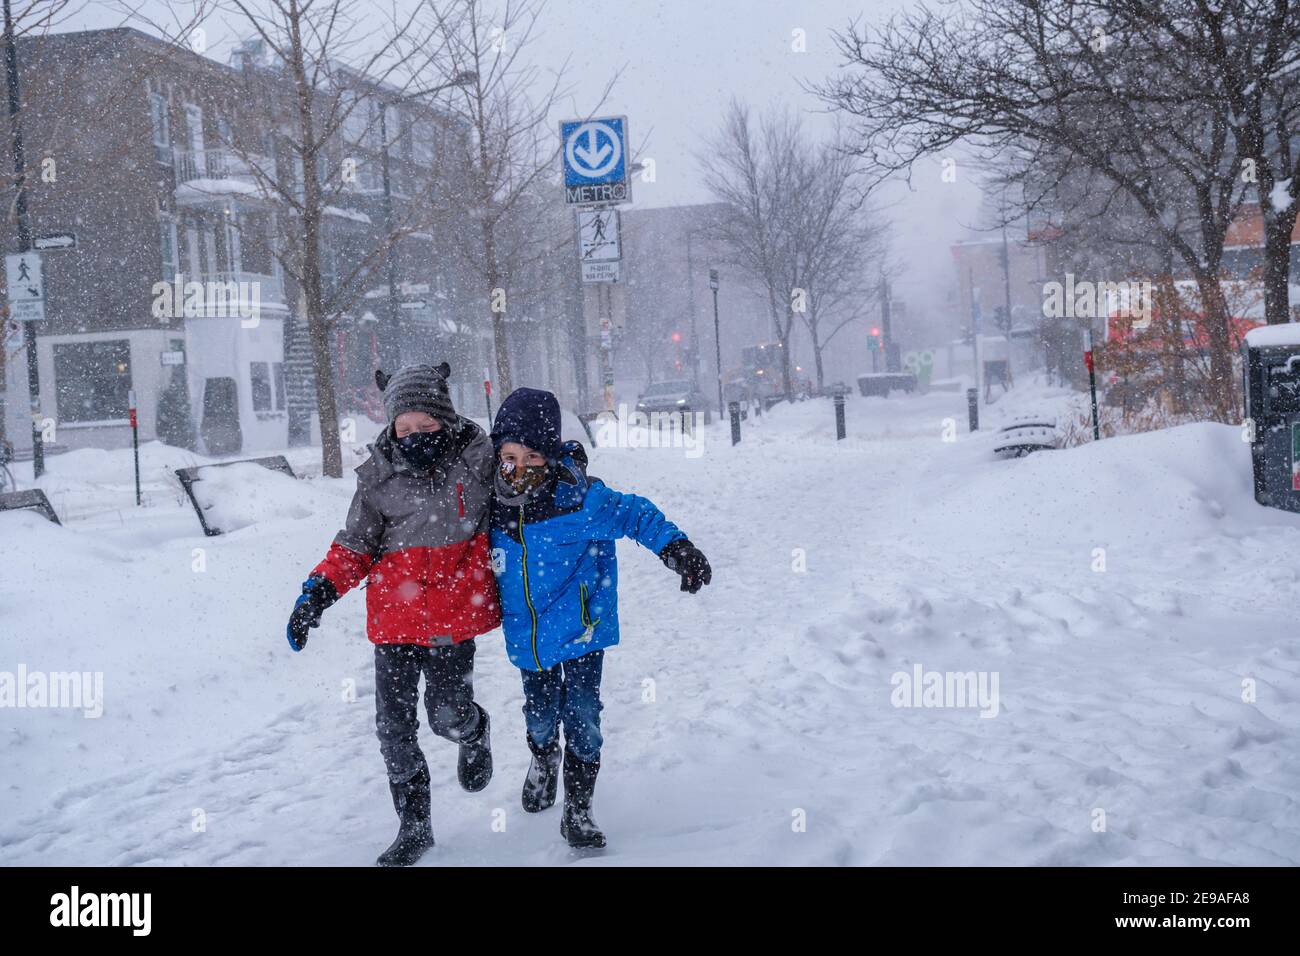 Montréal, CA - 2 février 2021 : deux enfants souriants s'amusent pendant la tempête de neige Banque D'Images